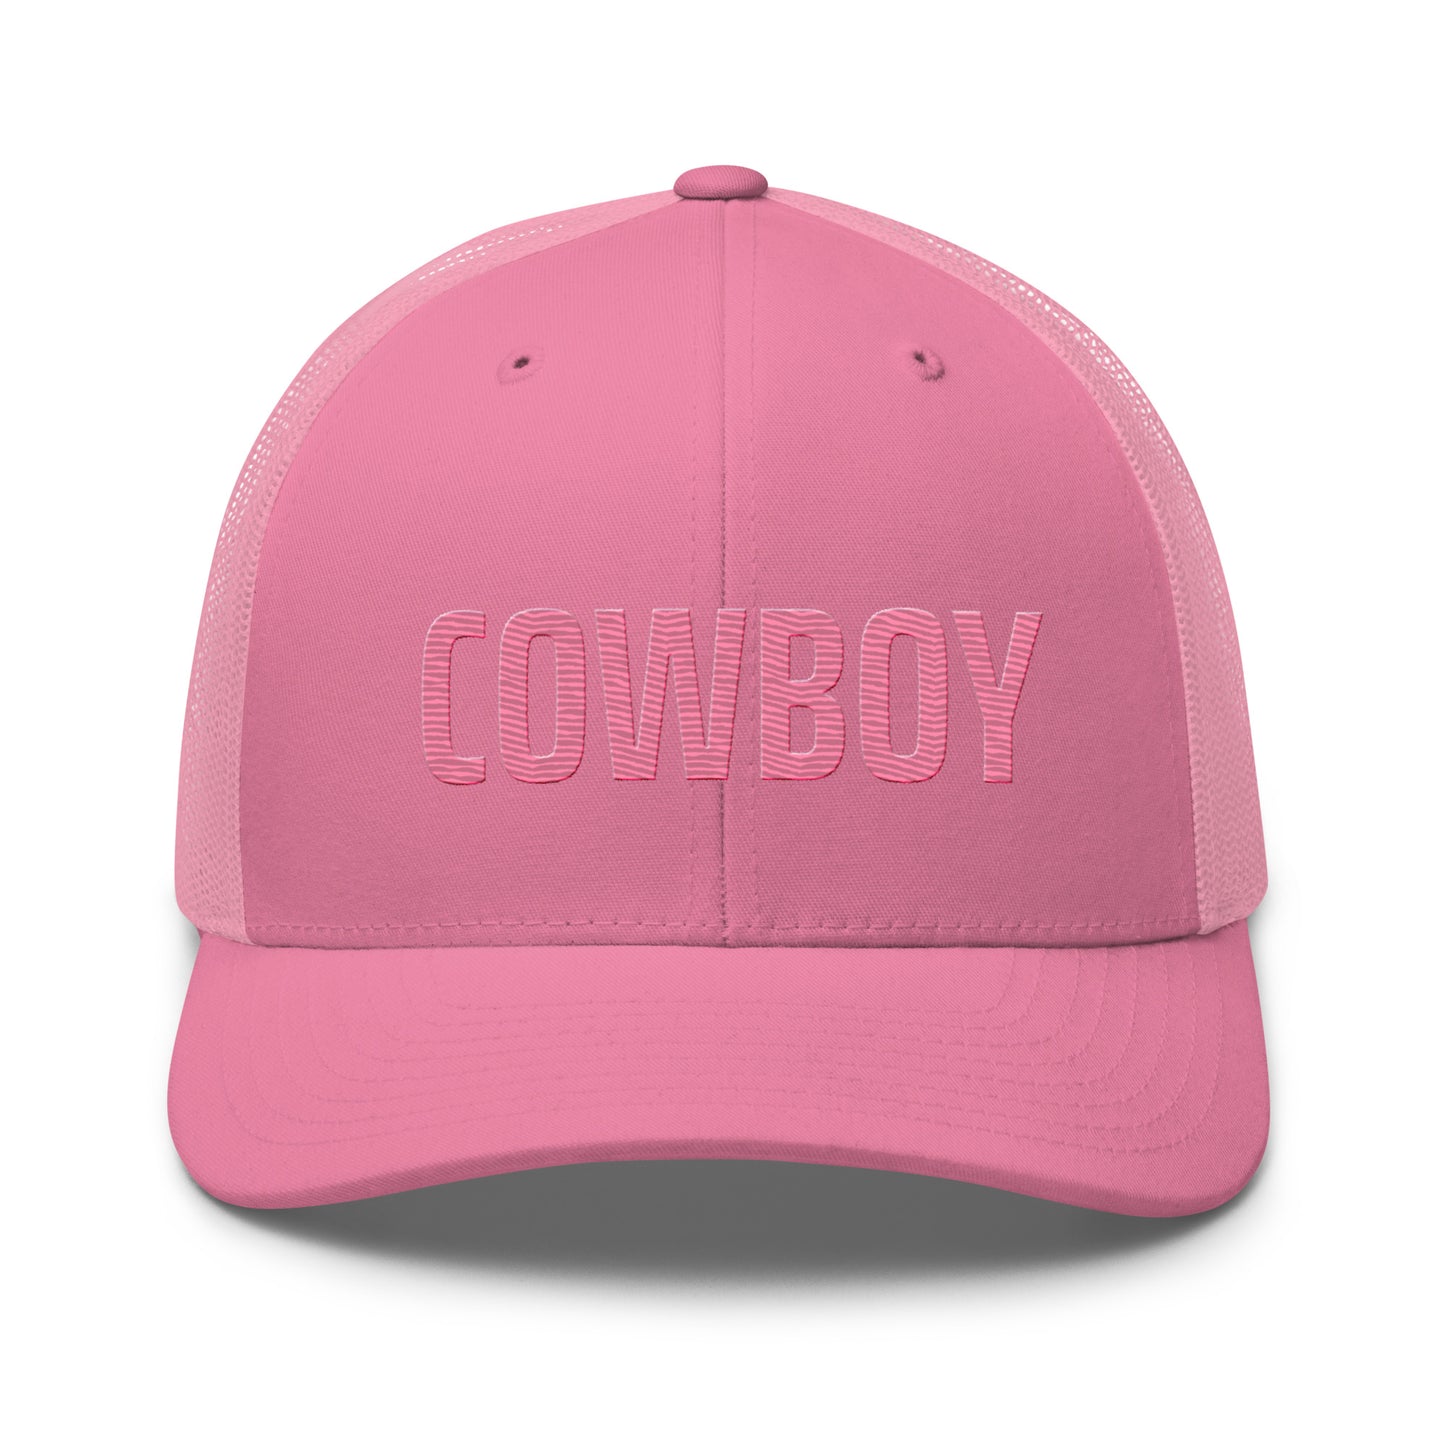 Pink Cowboy Trucker Cap